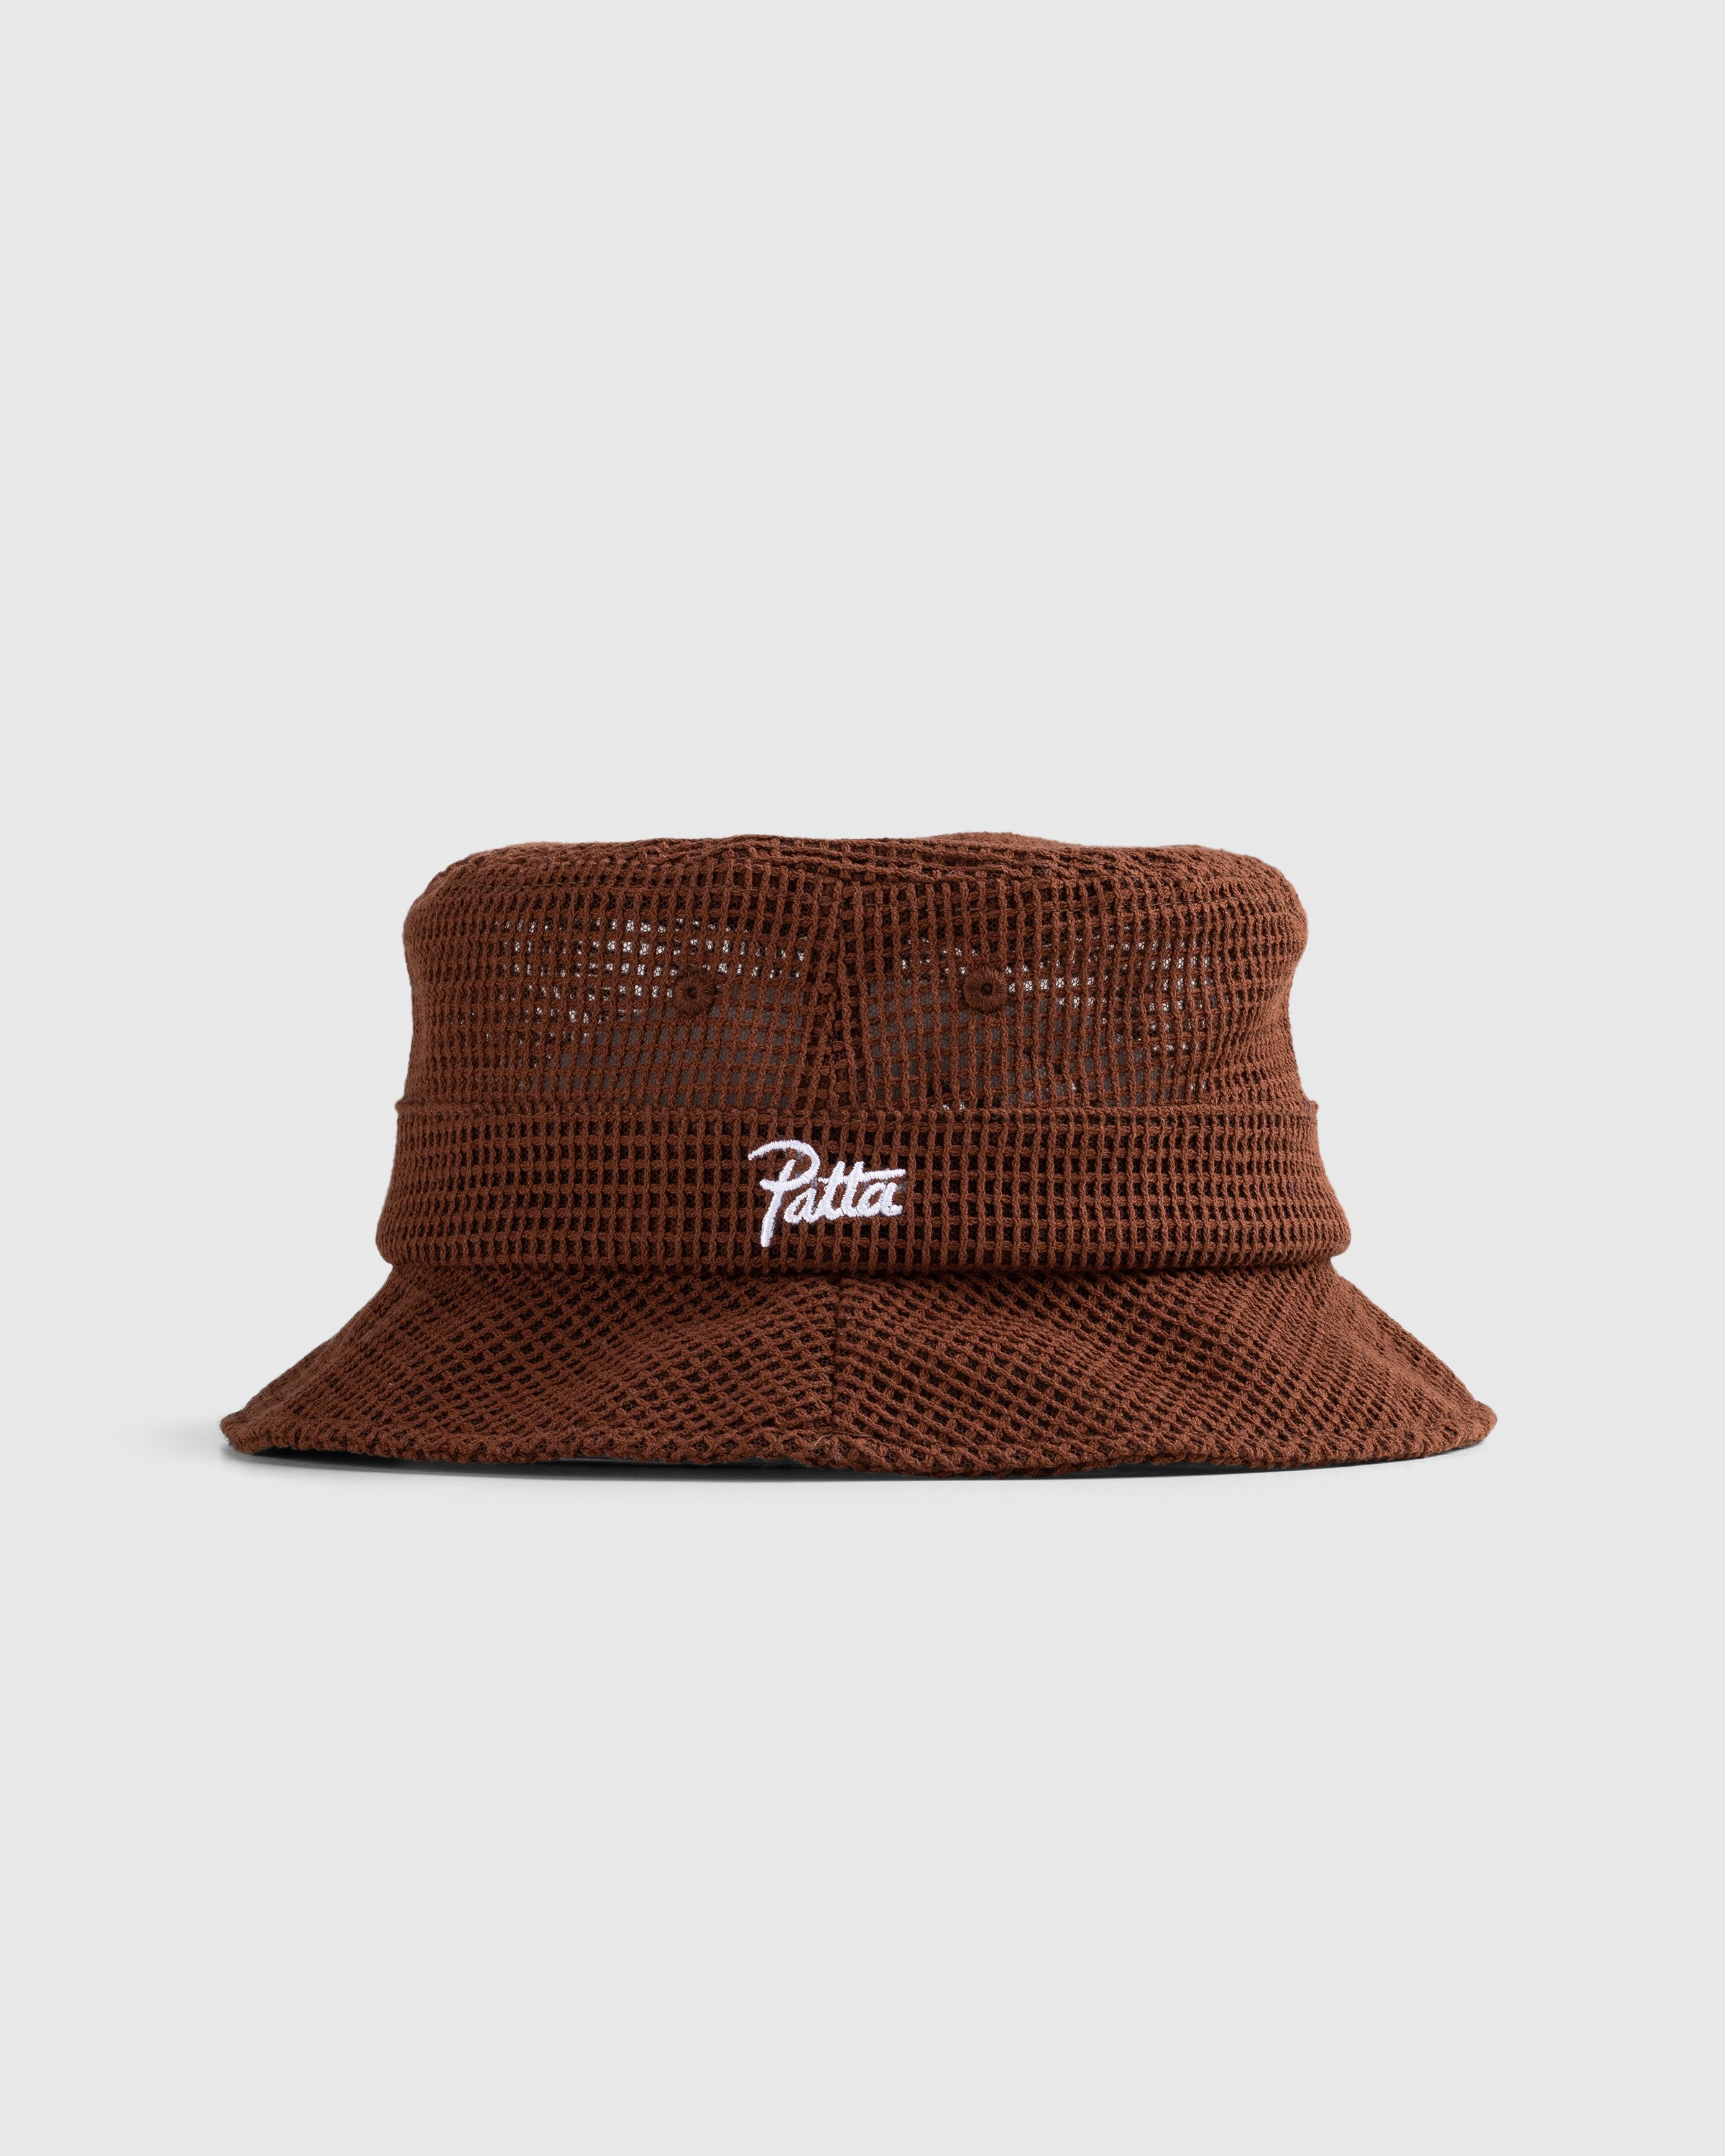 Patta - Mesh Bucket Hat Brown - Accessories - Brown - Image 1